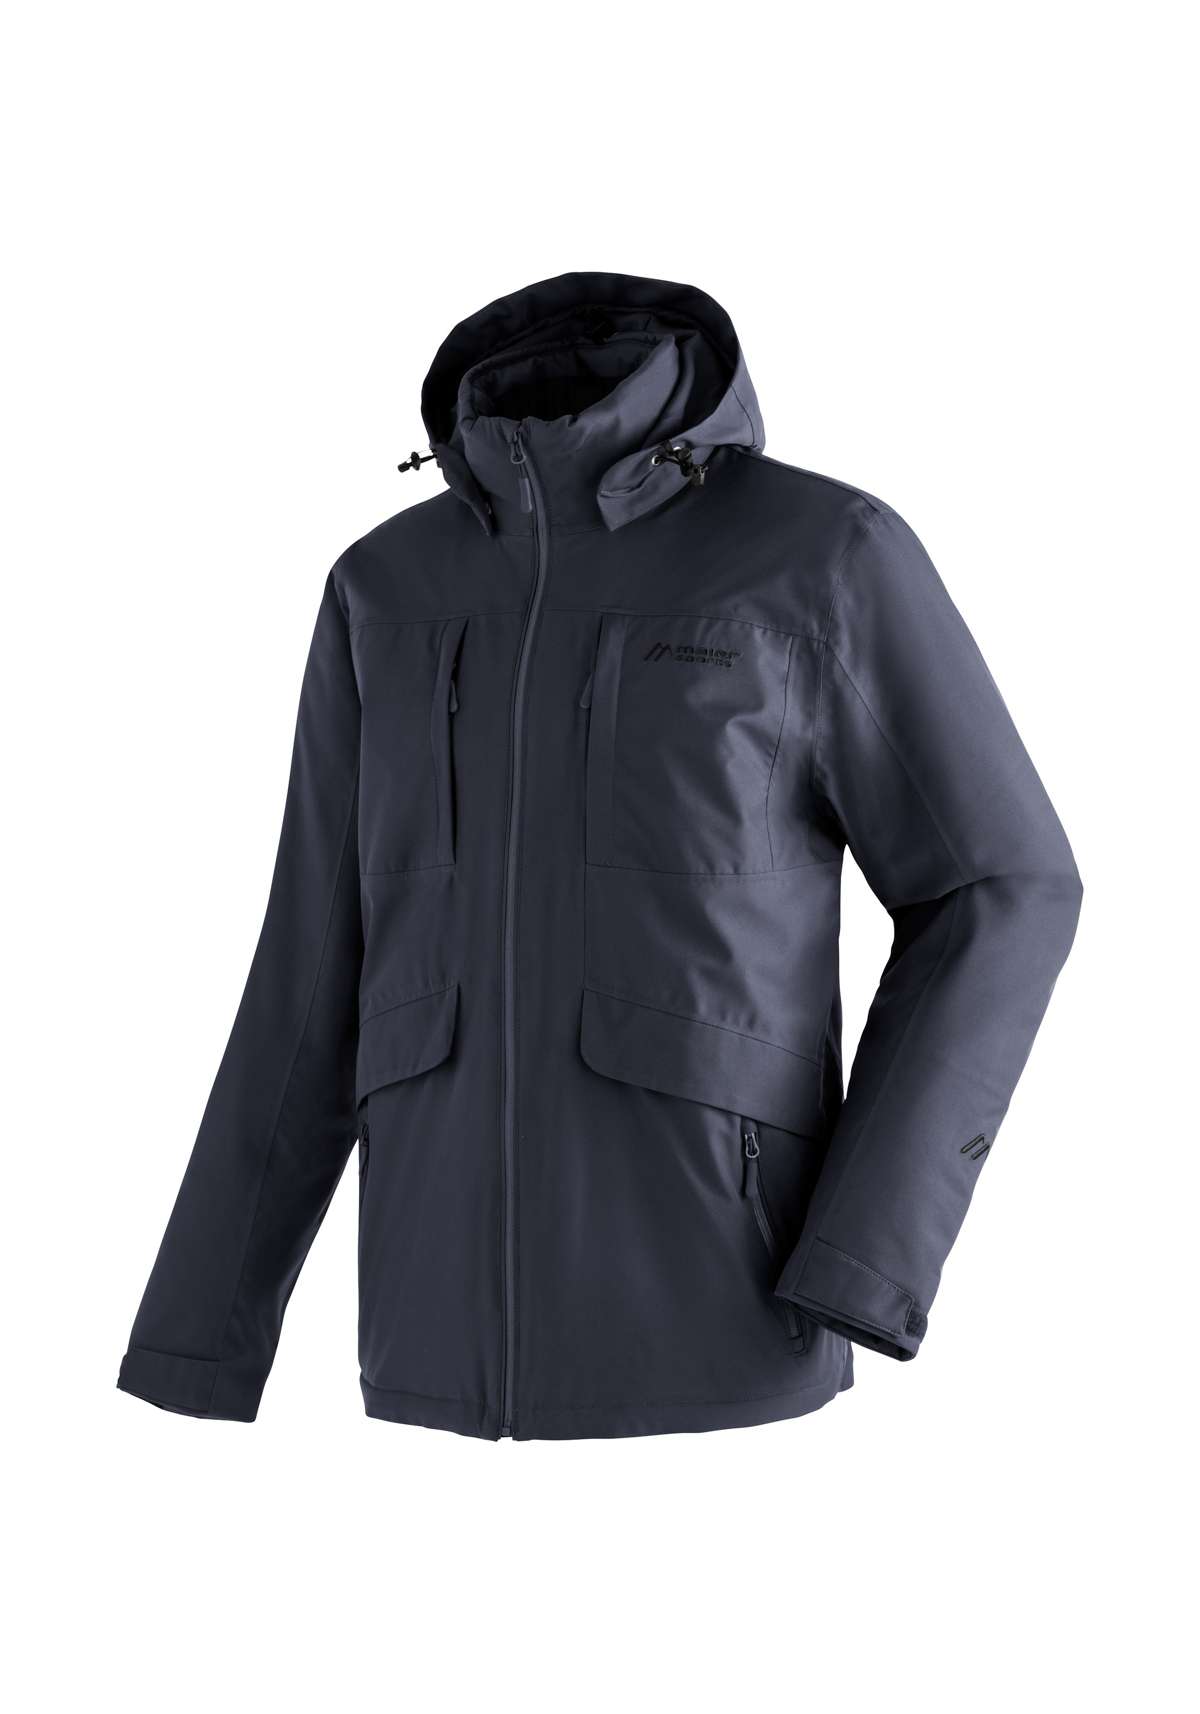 Функциональная куртка, функциональная куртка для активного отдыха с большим сетчатым карманом для капюшона.